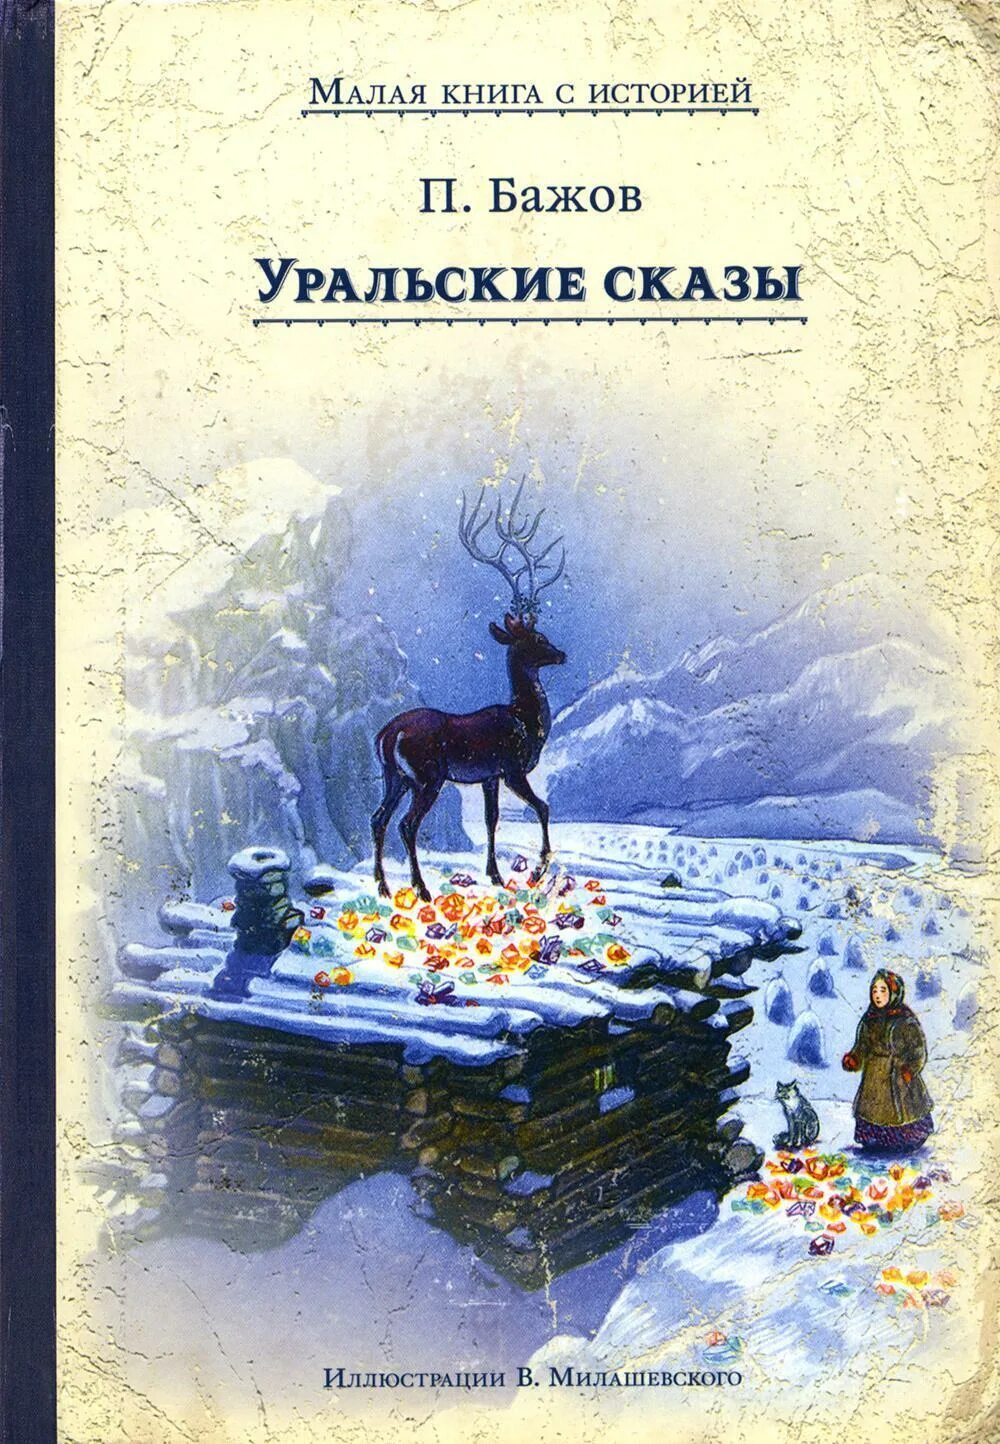 Книга маленькая гора. Бажов Уральские сказы книга.